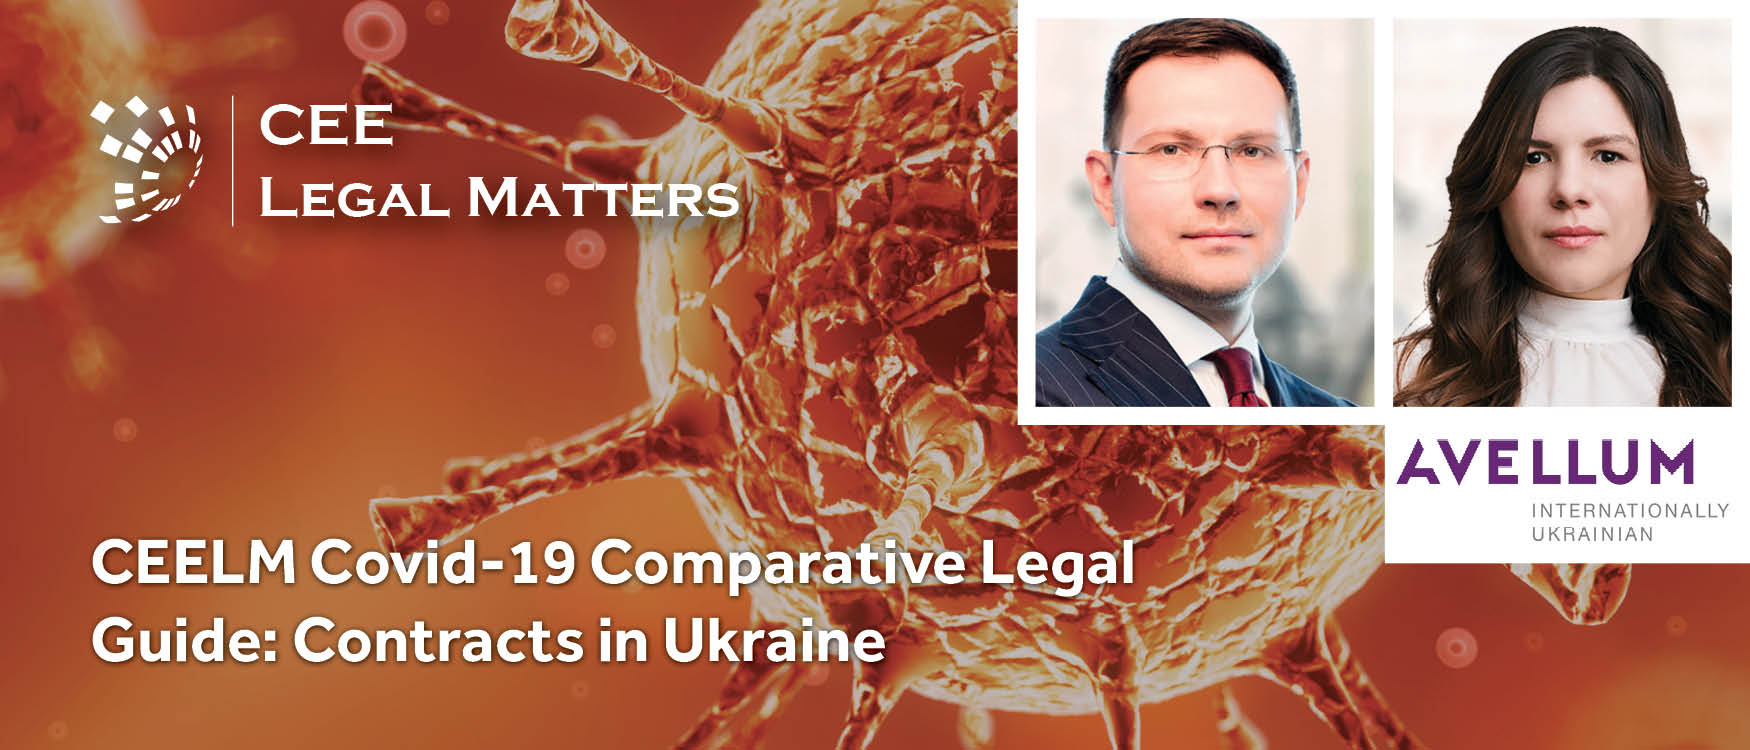 CEELM Covid-19 Comparative Legal Guide: Contracts in Ukraine